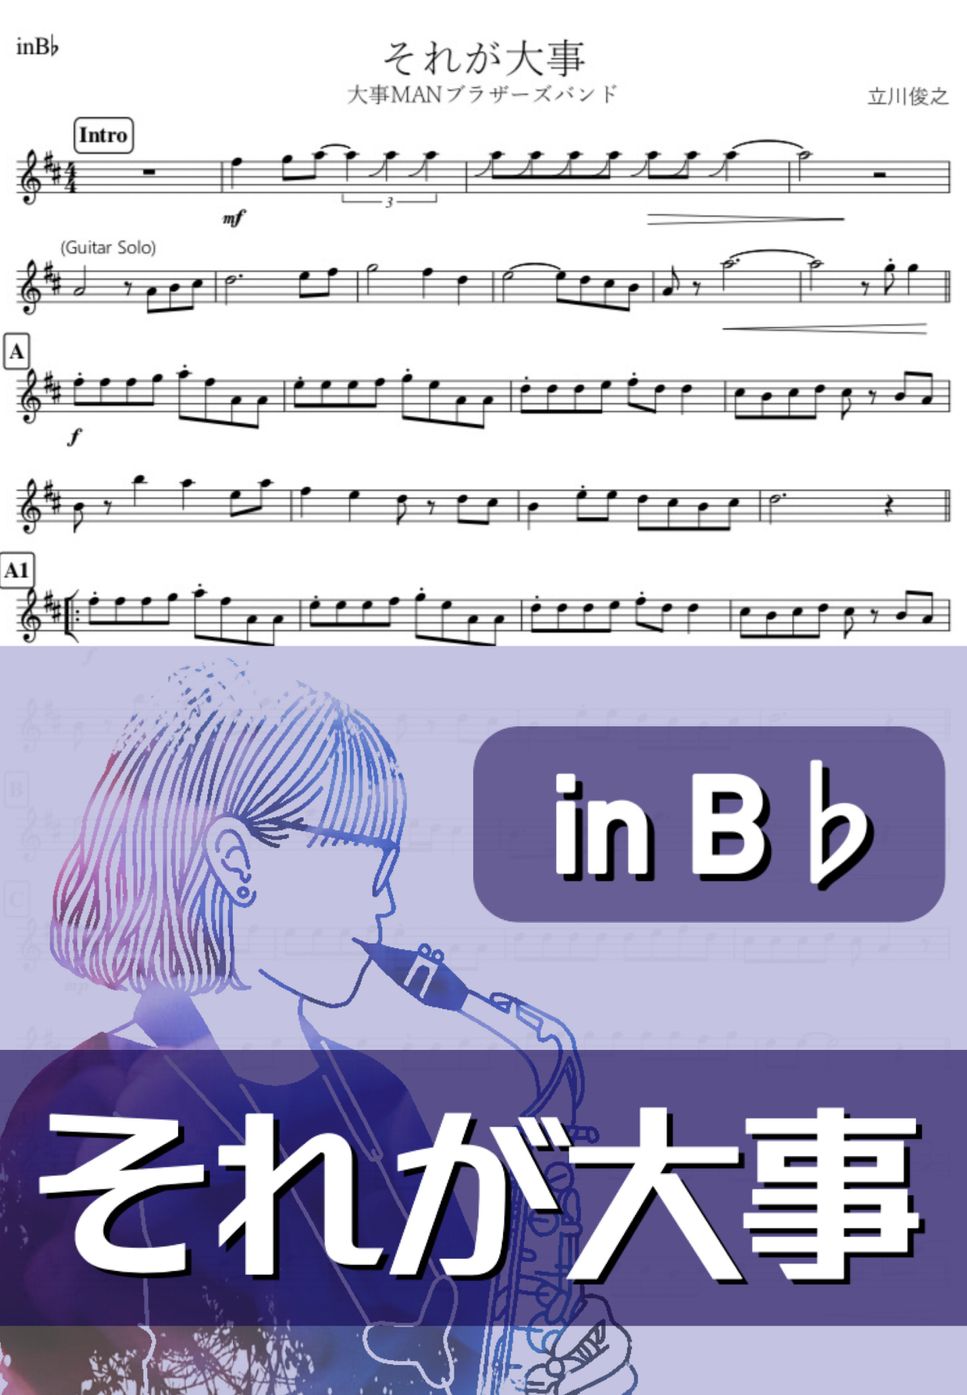 大事MANブラザーズバンド - それが大事 (B♭) by kanamusic